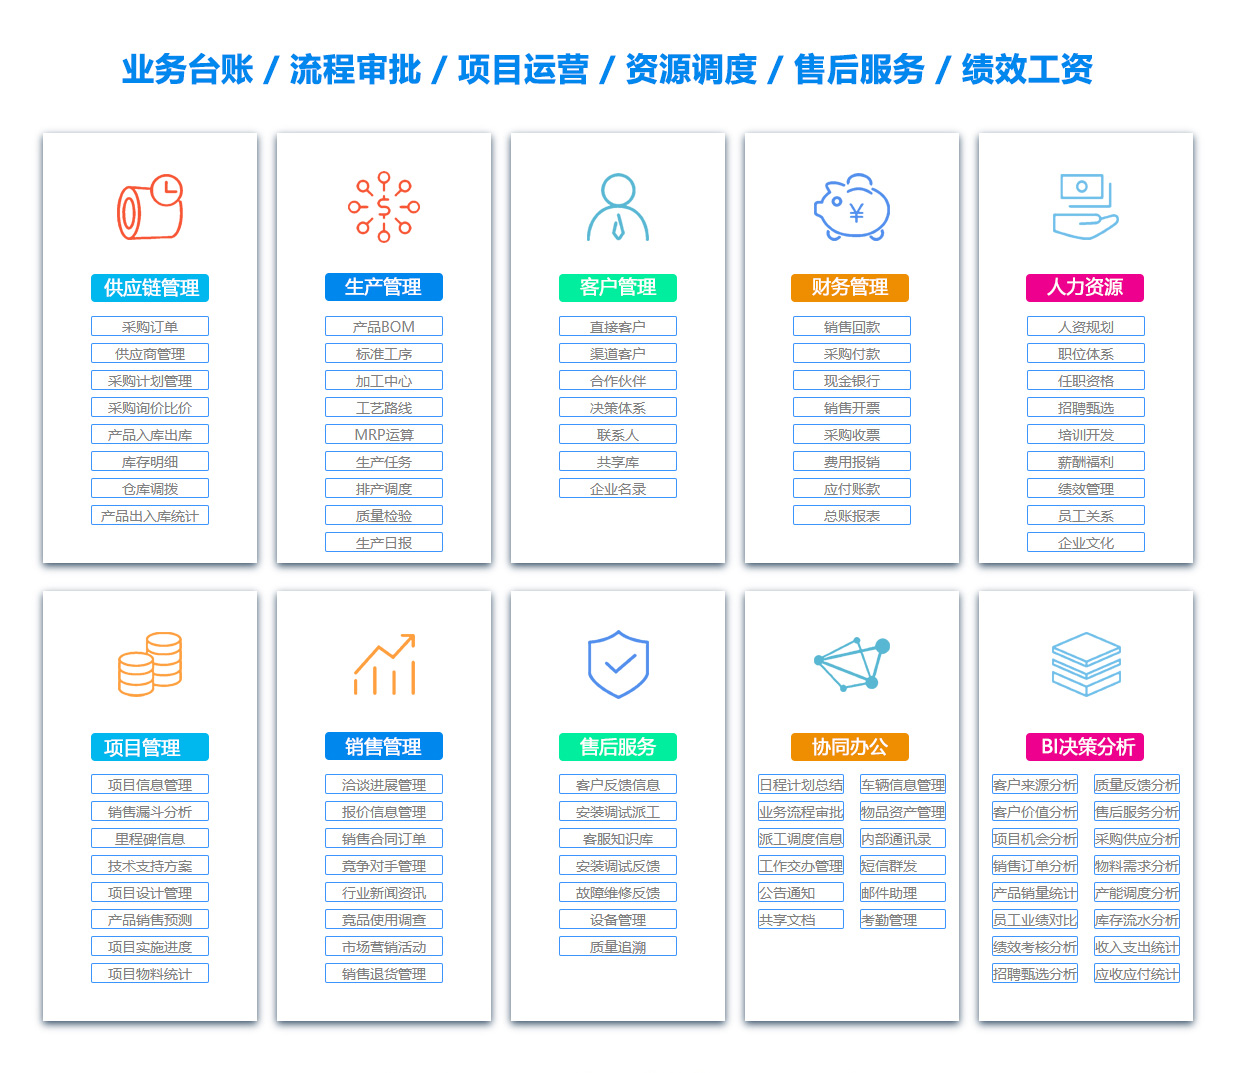 贵州MIS:信息管理系统